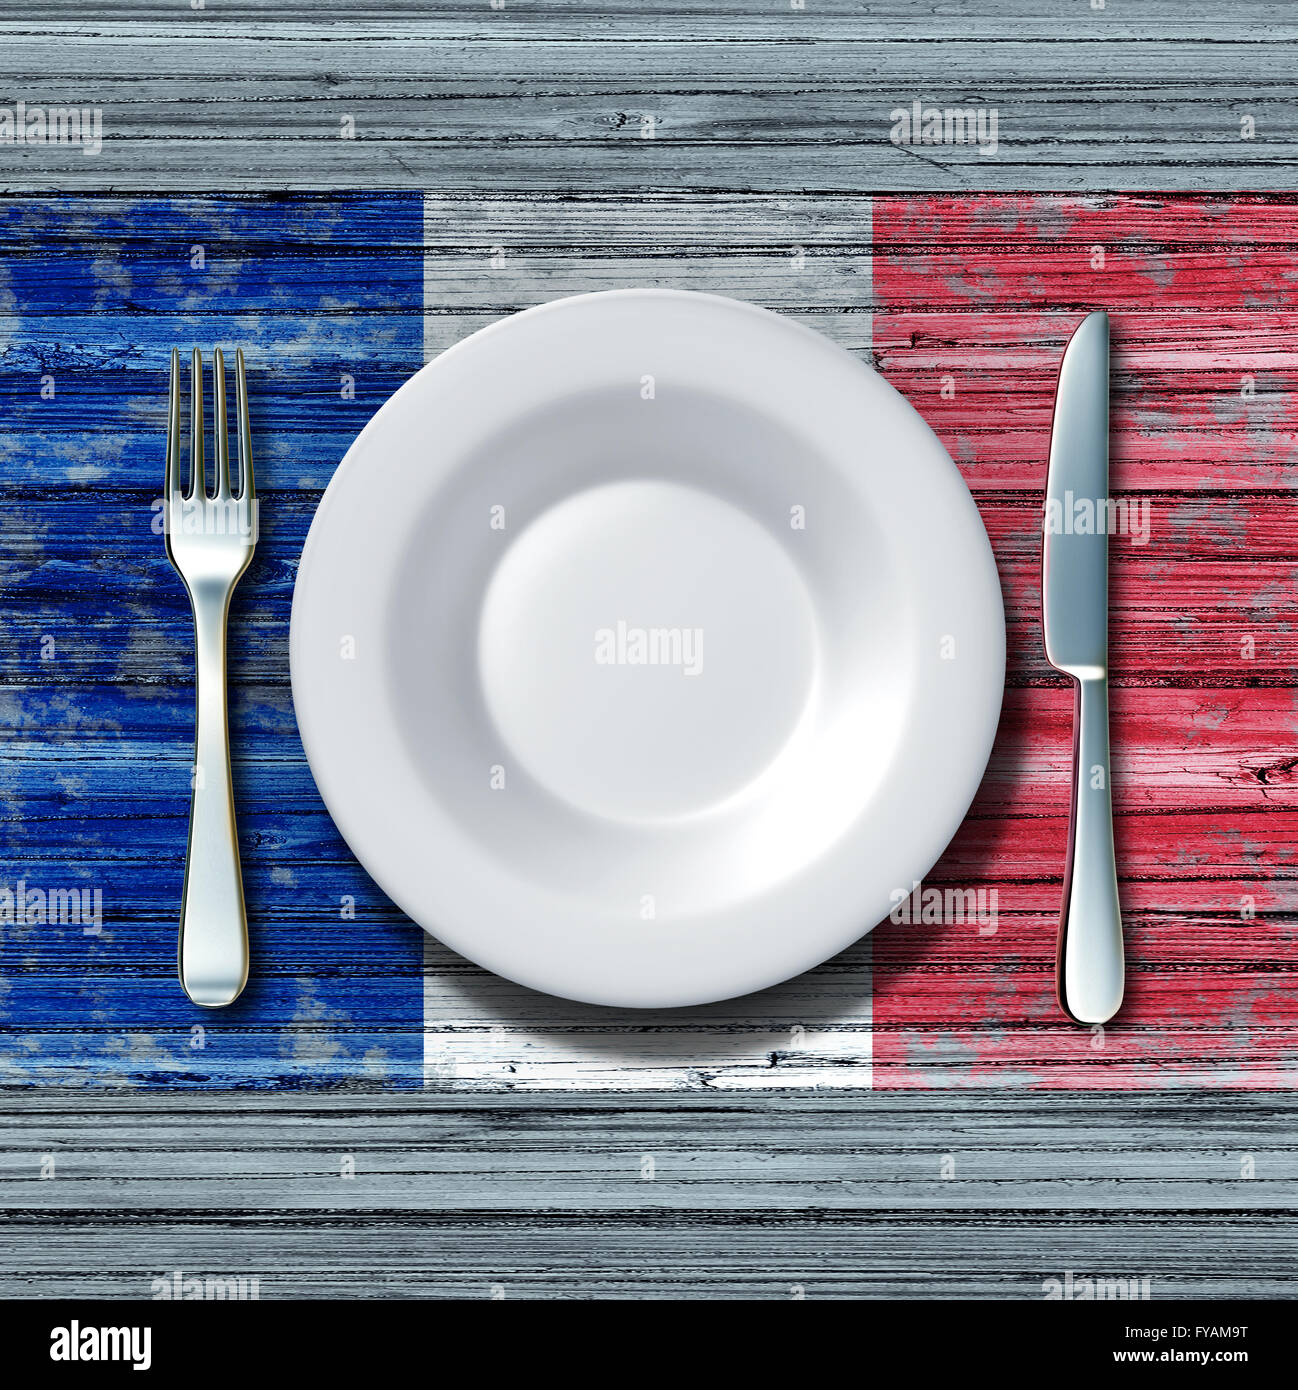 Französische Küche-Food-Konzept als ein Gedeck mit Messer und Gabel auf einen alten rustikalen Holztisch mit ein Symbol für die Flagge Frankreichs als Symbol der traditionellen mediterranen Familie Essen in Paris mit 3D Abbildung Elemente. Stockfoto